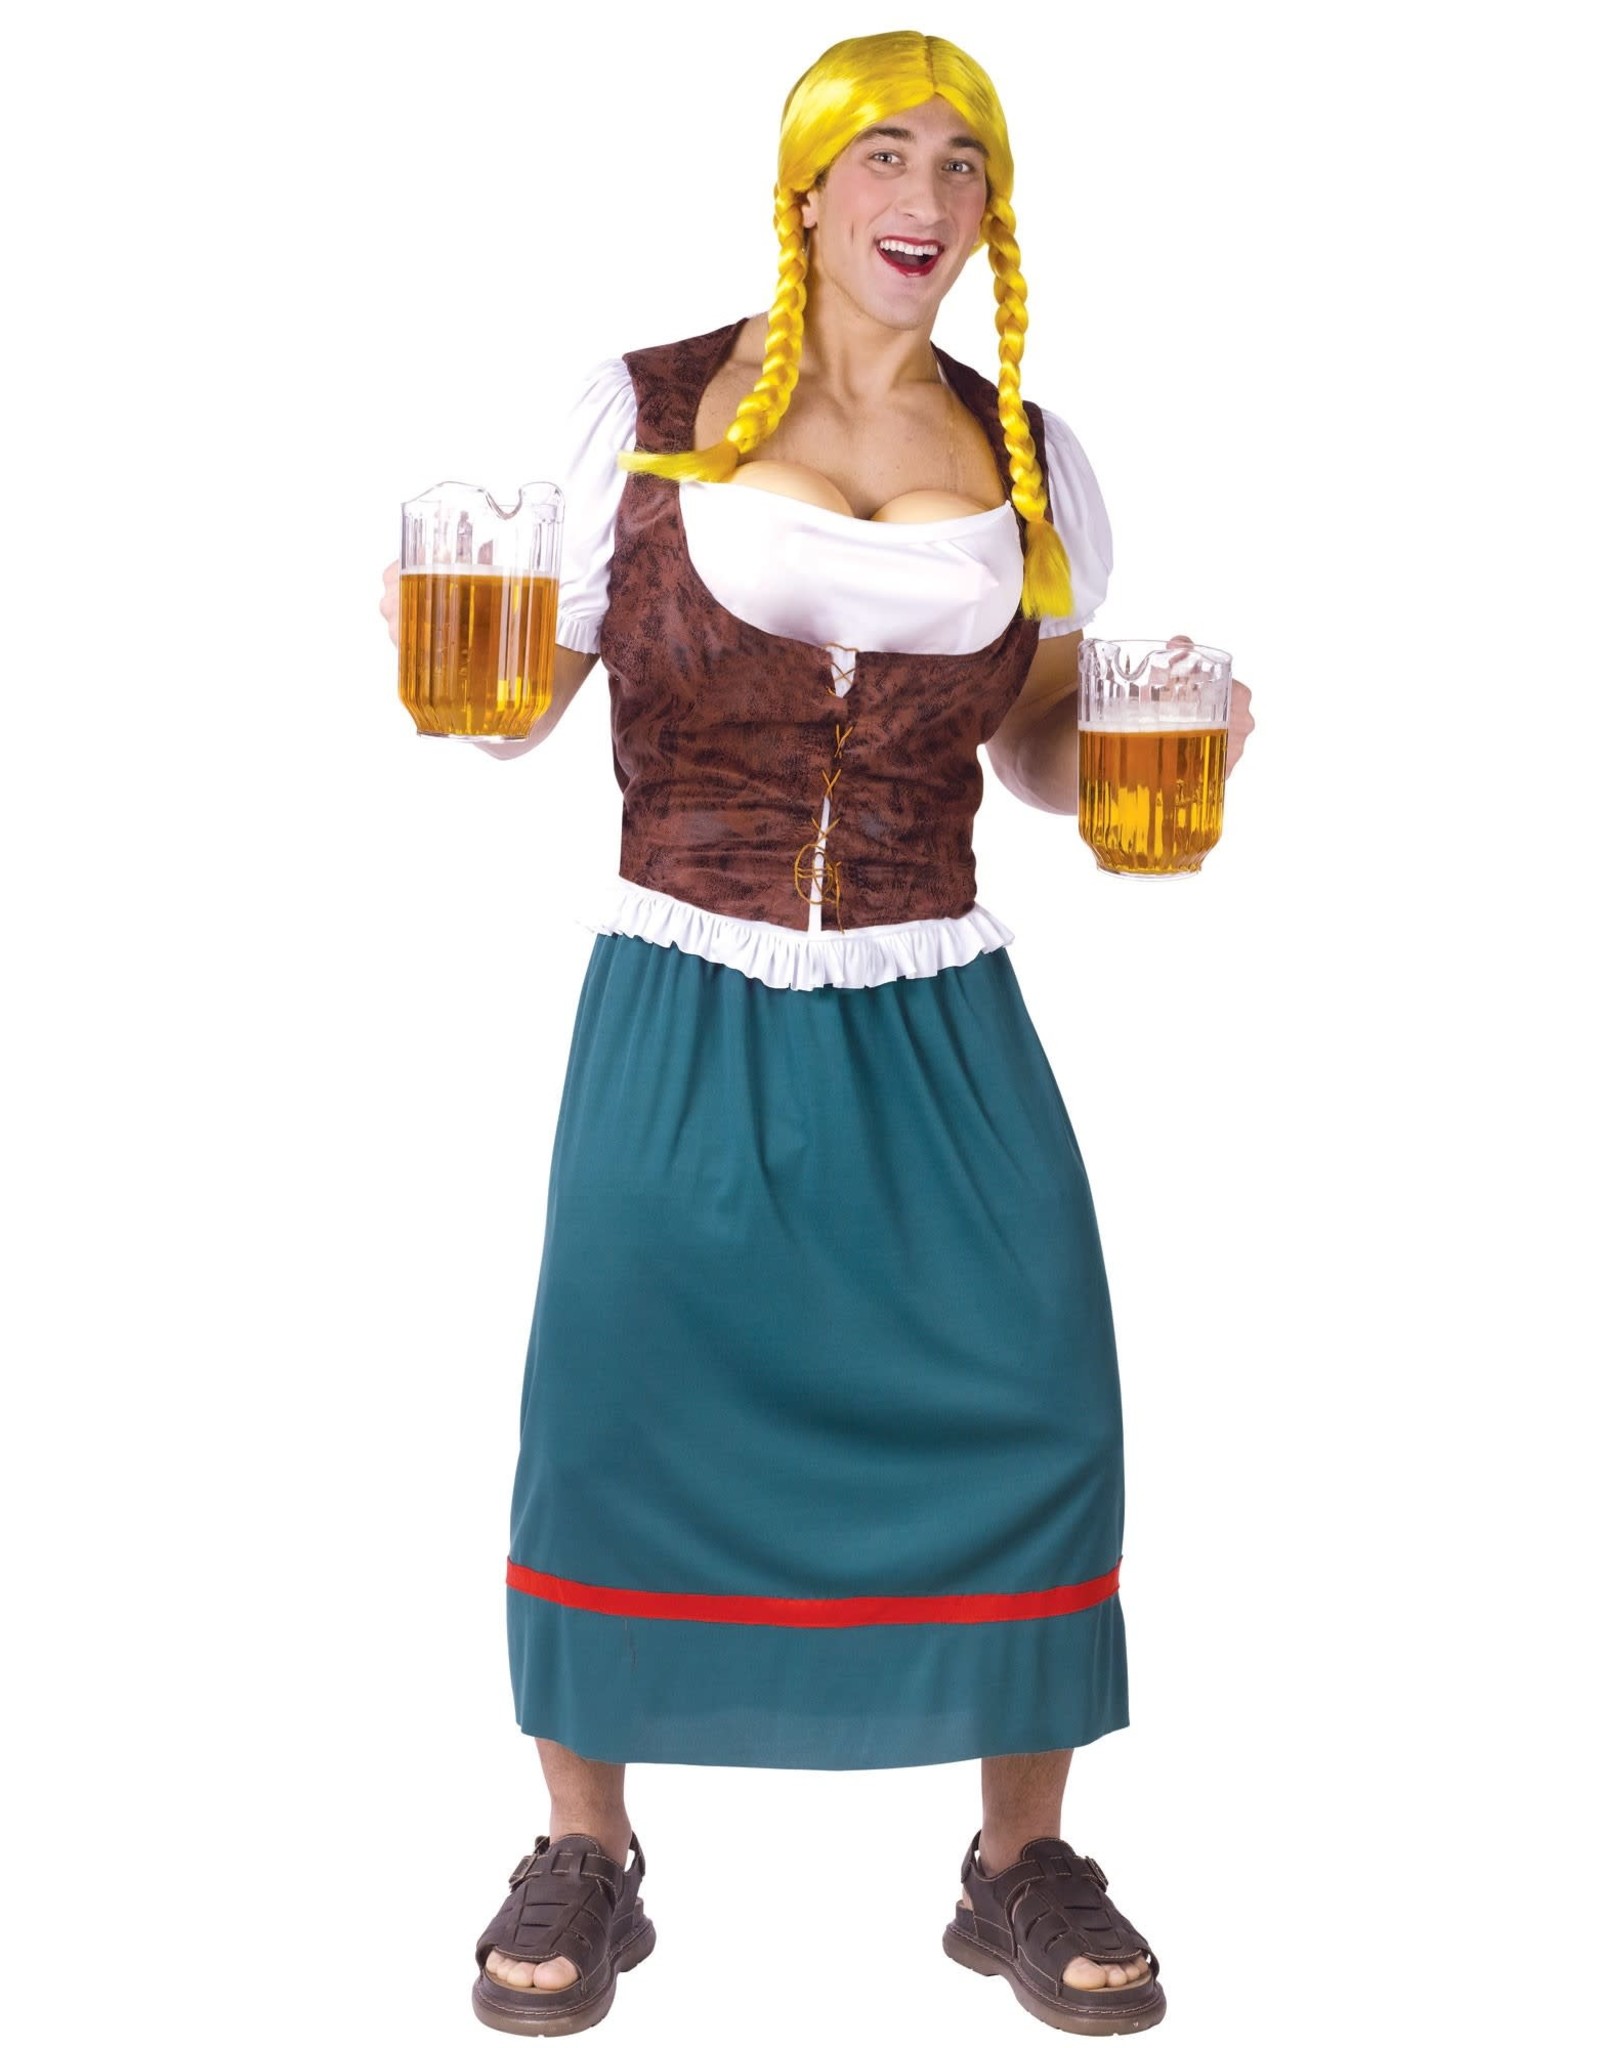 Antipoison Rook Toestand Oktoberfest Kostuum Tiroler Dirndl Man (one Size) - De verkleedzolder, voor  al uw feestartikelen, accessoires, verhuur en verkoop van kleding,  feestkleding en kostuums voor uw themafeest of gala.